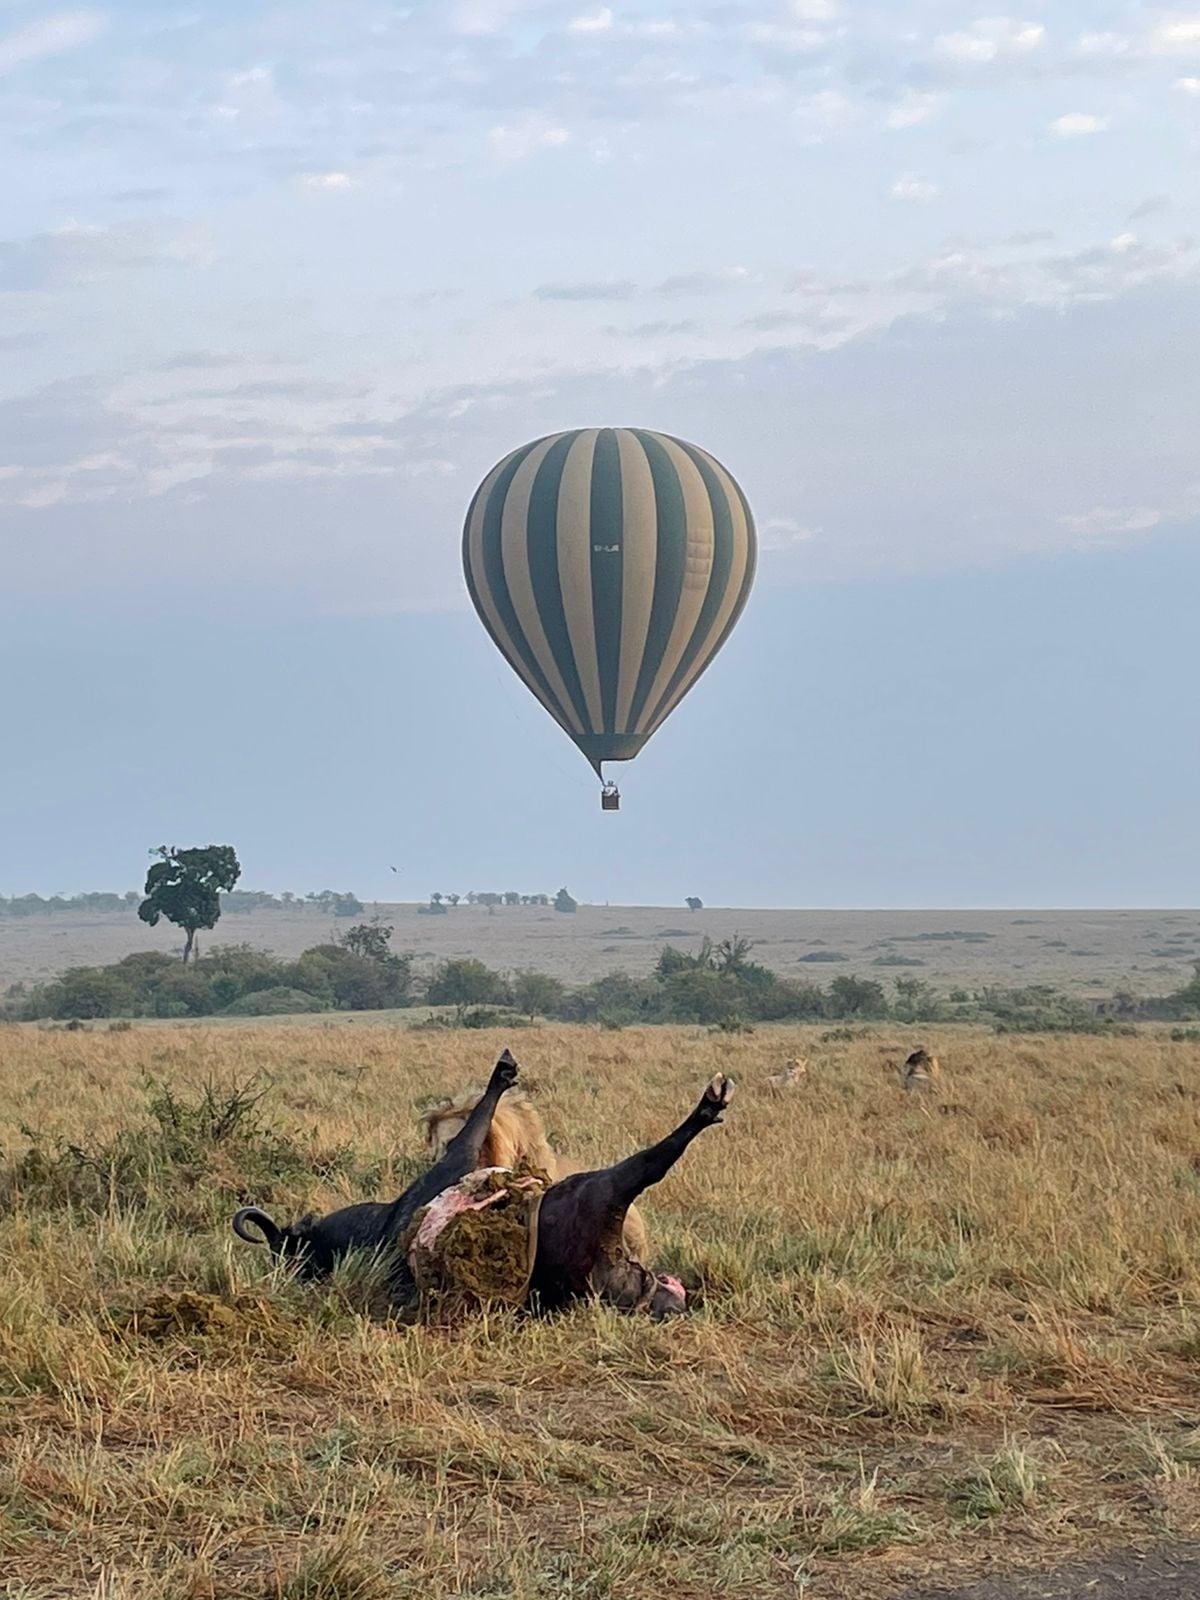 YHA Kenya Travel, Balloon Safaris, Balloon Safaris in Kenya, Activity Adventure, active adventure safari, active adventures, Balloon Safari, Kenya balloon safaris, Hot Air Balloon, Mara Hot Air Balloon, Safari Booking, Safari Bookings, Epic Tours Safaris